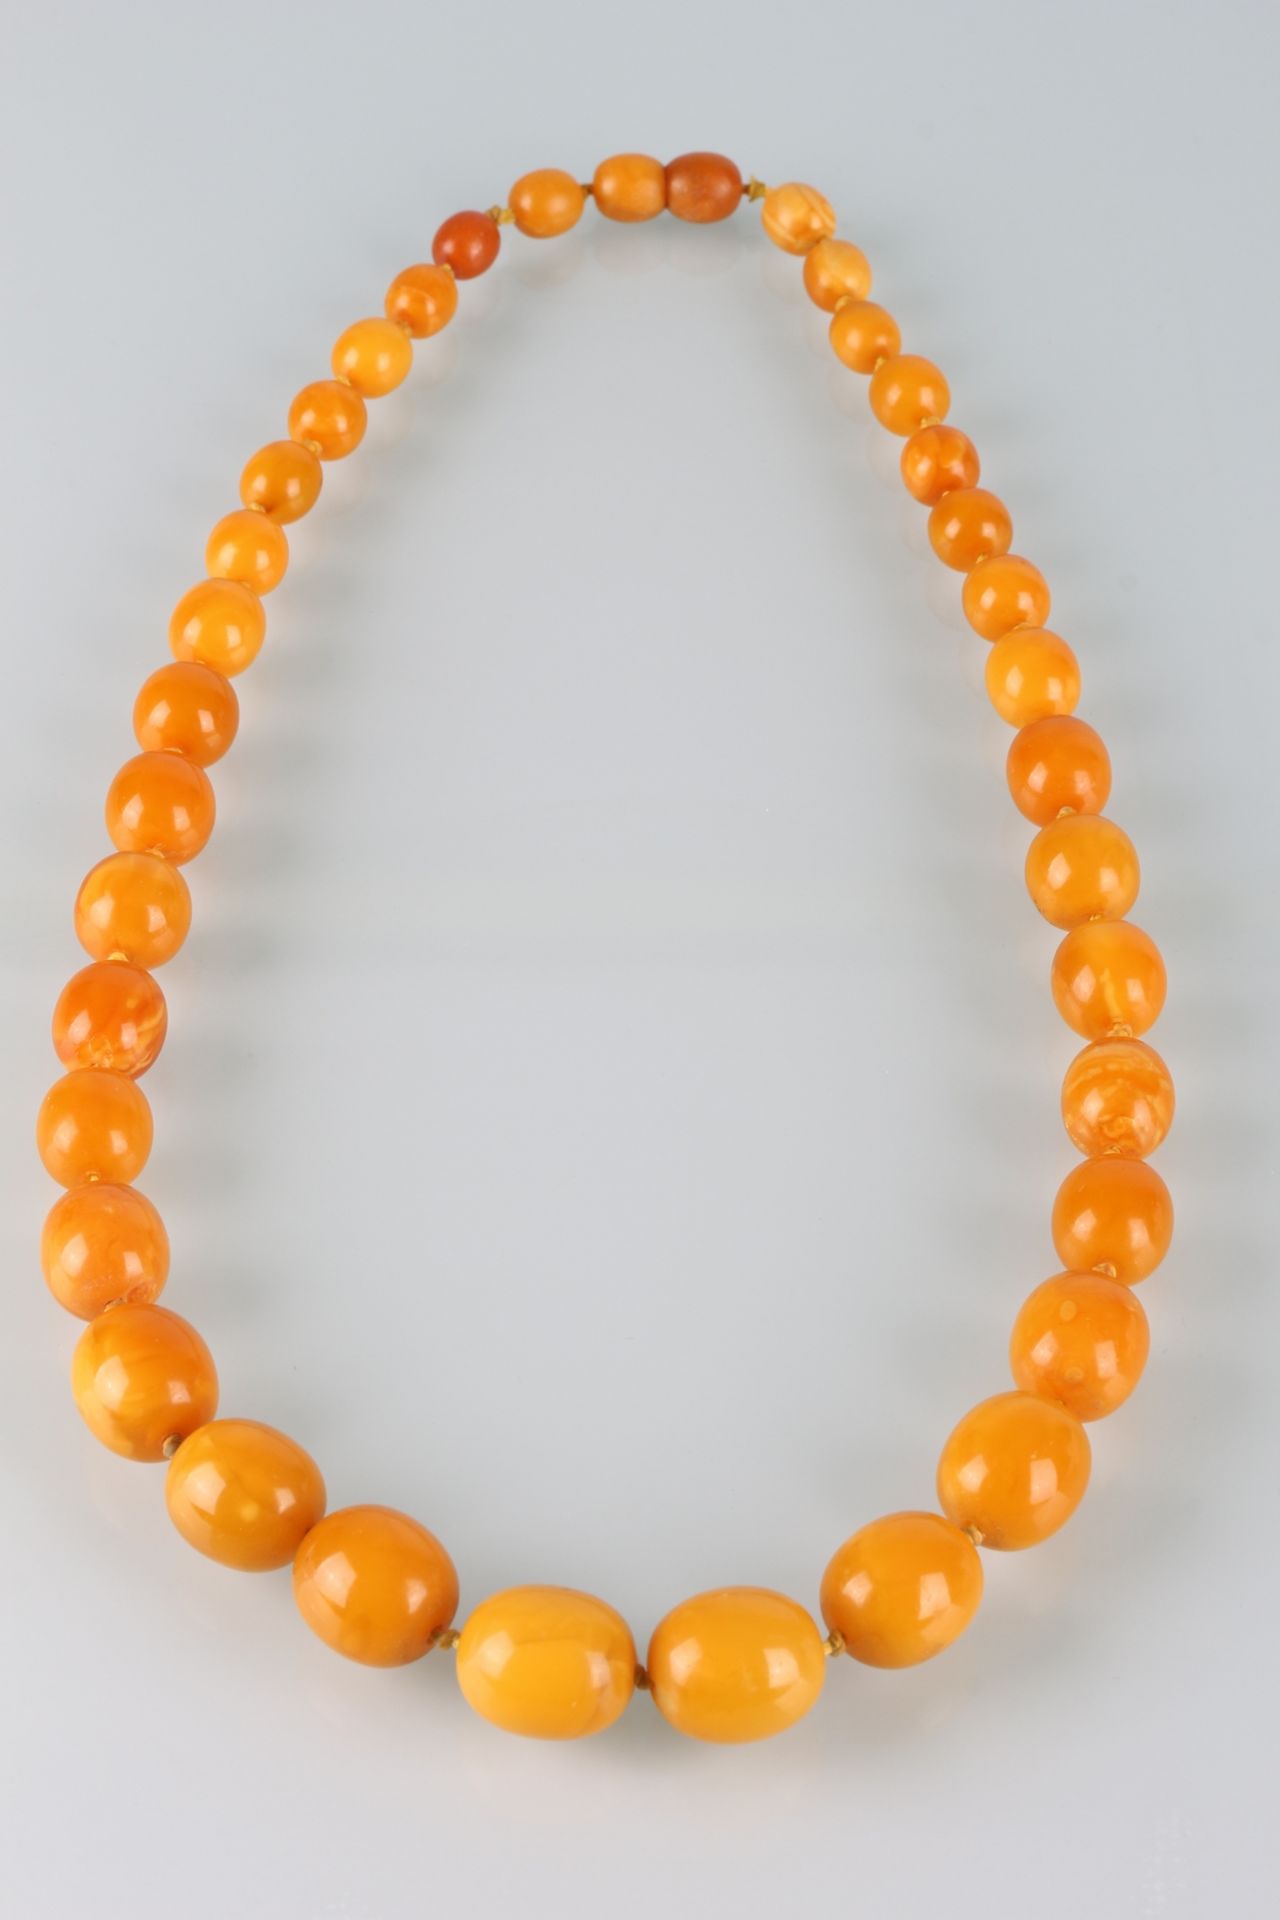 Bernstein Collier / Halskette, butterscotch amber necklace, - Bild 3 aus 3